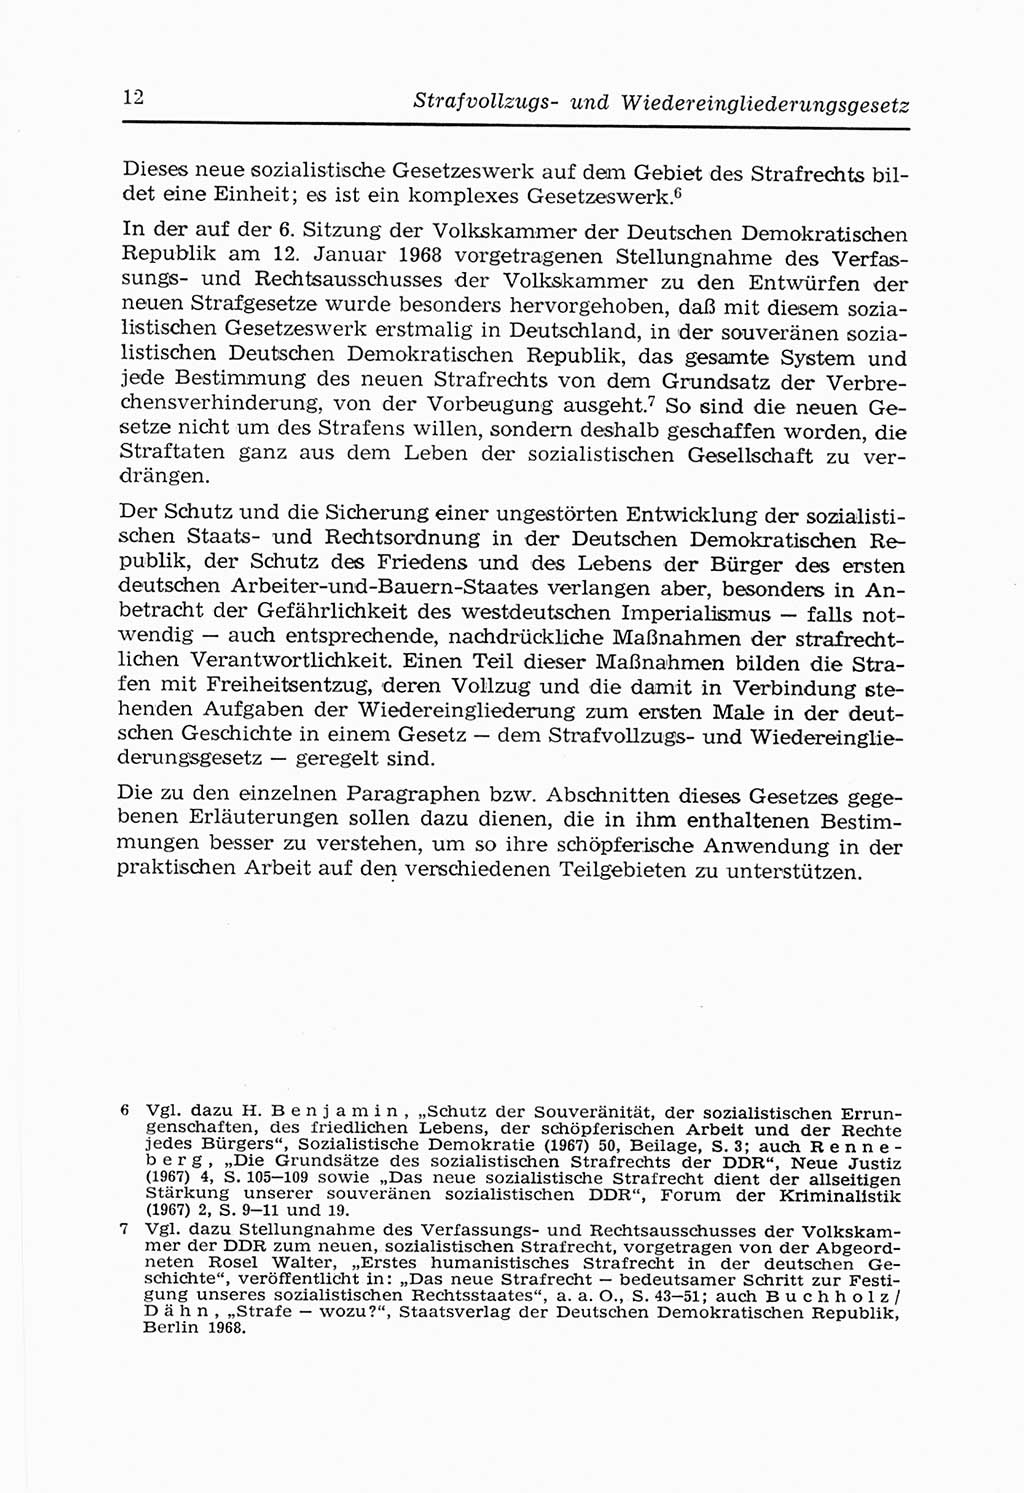 Strafvollzugs- und Wiedereingliederungsgesetz (SVWG) der Deutschen Demokratischen Republik (DDR) 1968, Seite 12 (SVWG DDR 1968, S. 12)